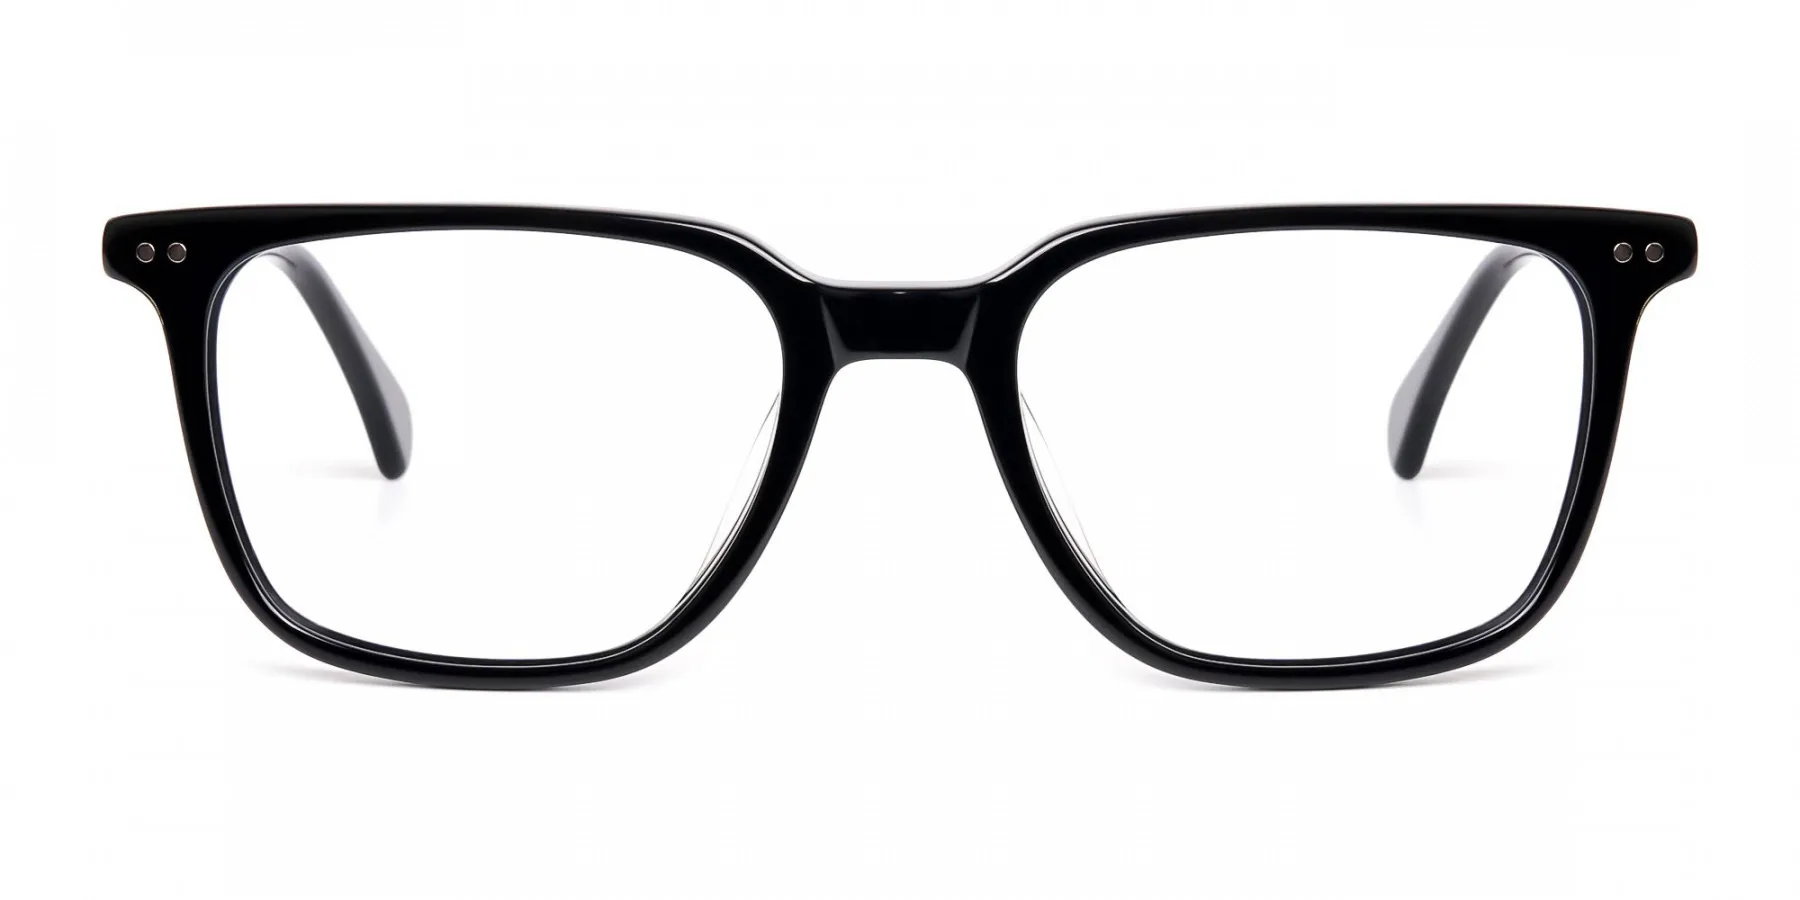 black rectangular full rim glasses frames